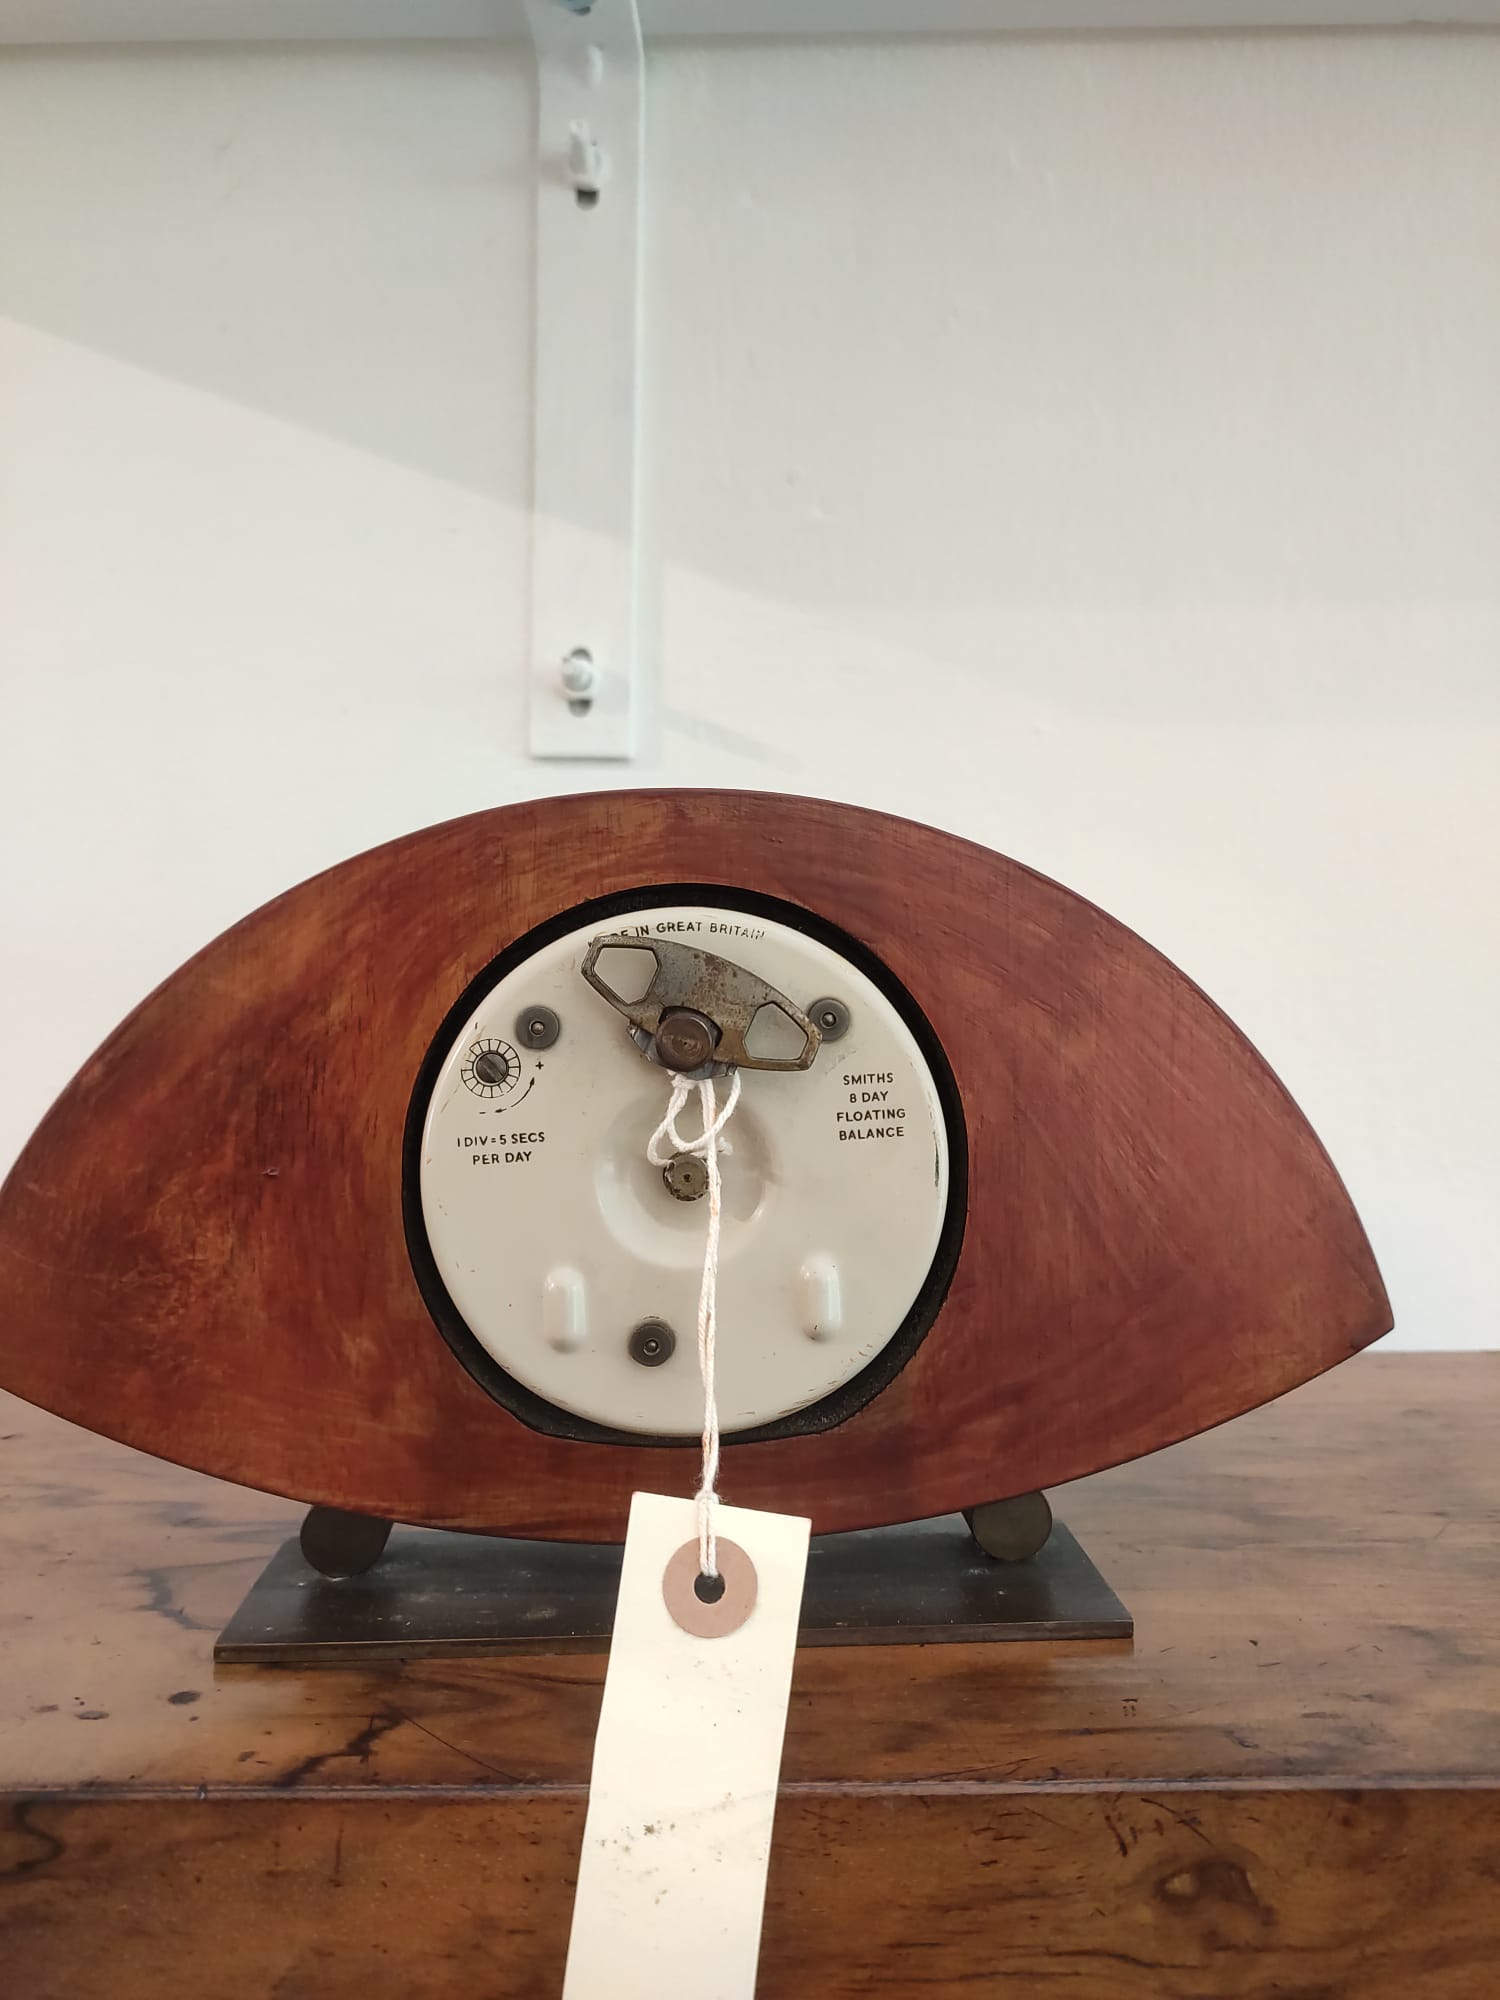 Vintage Smith table clock #vintageclock